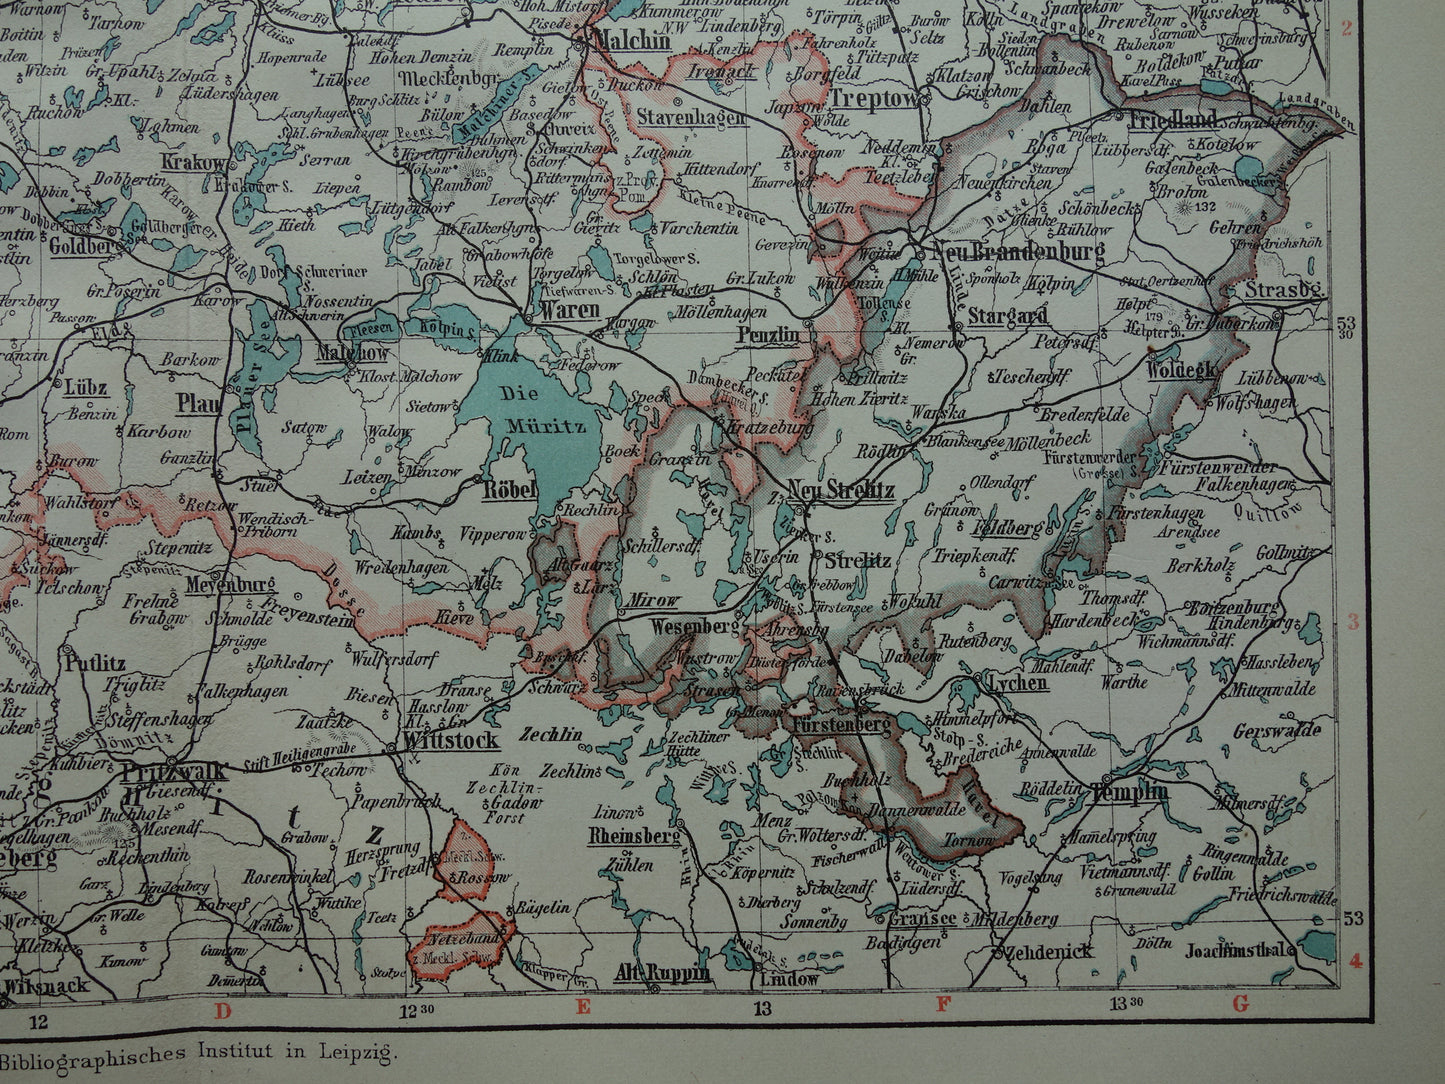 DUITSLAND oude kaart van Mecklenburg Schwerin Strelitz 1906 originele antieke Duitse landkaart van noordoost Duitsland Rostock Lübeck